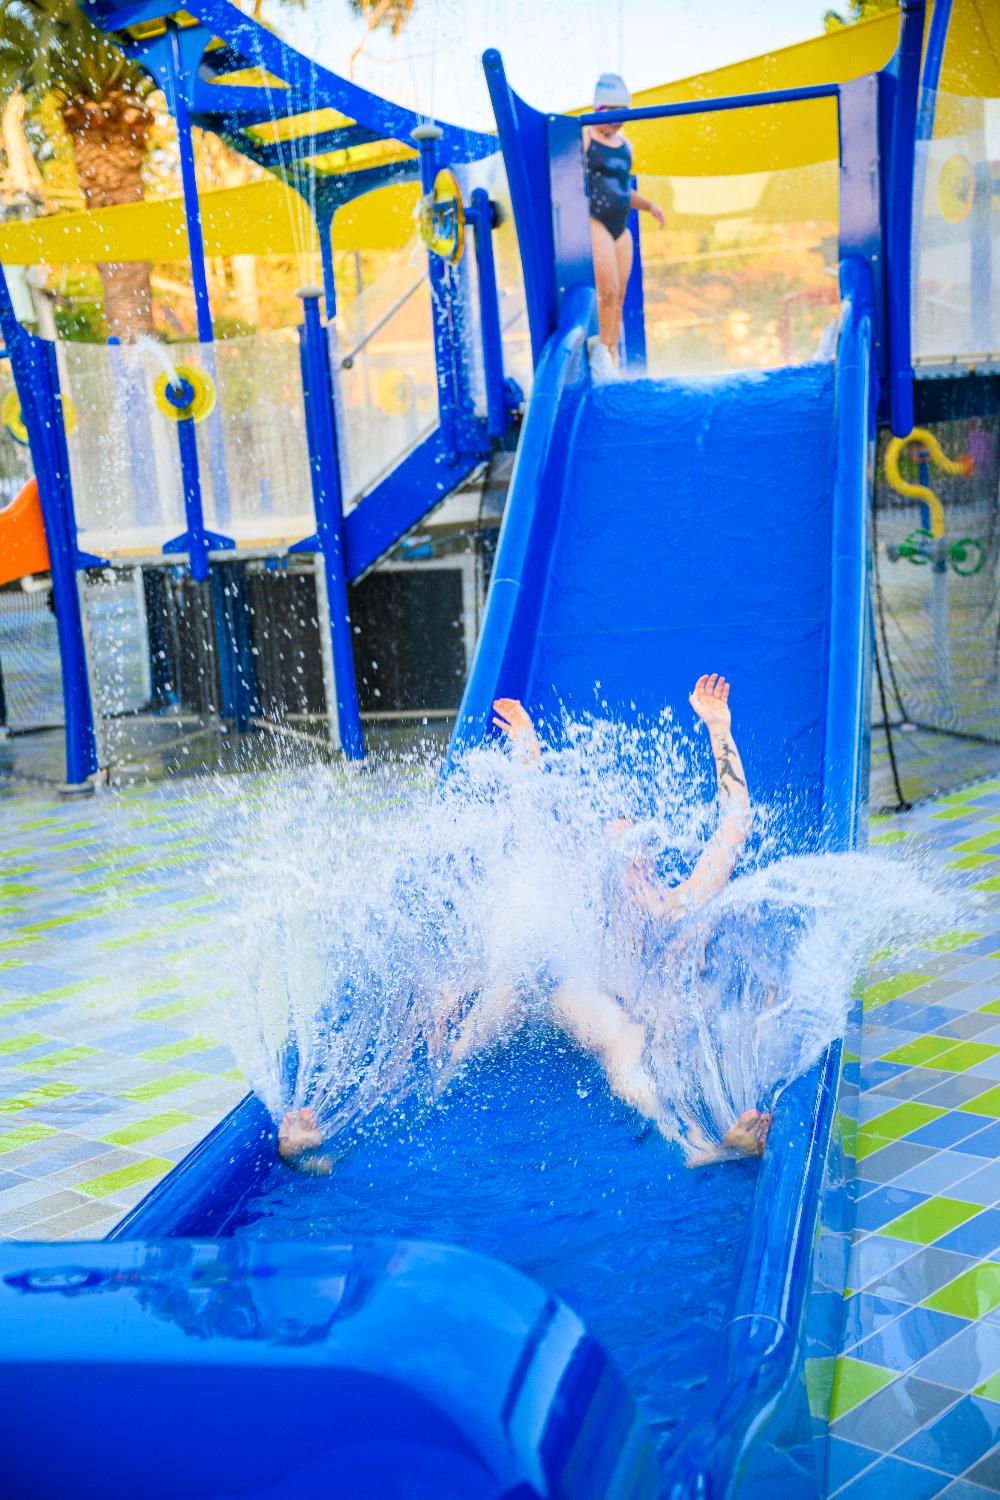 Splash pad - Blue Slide